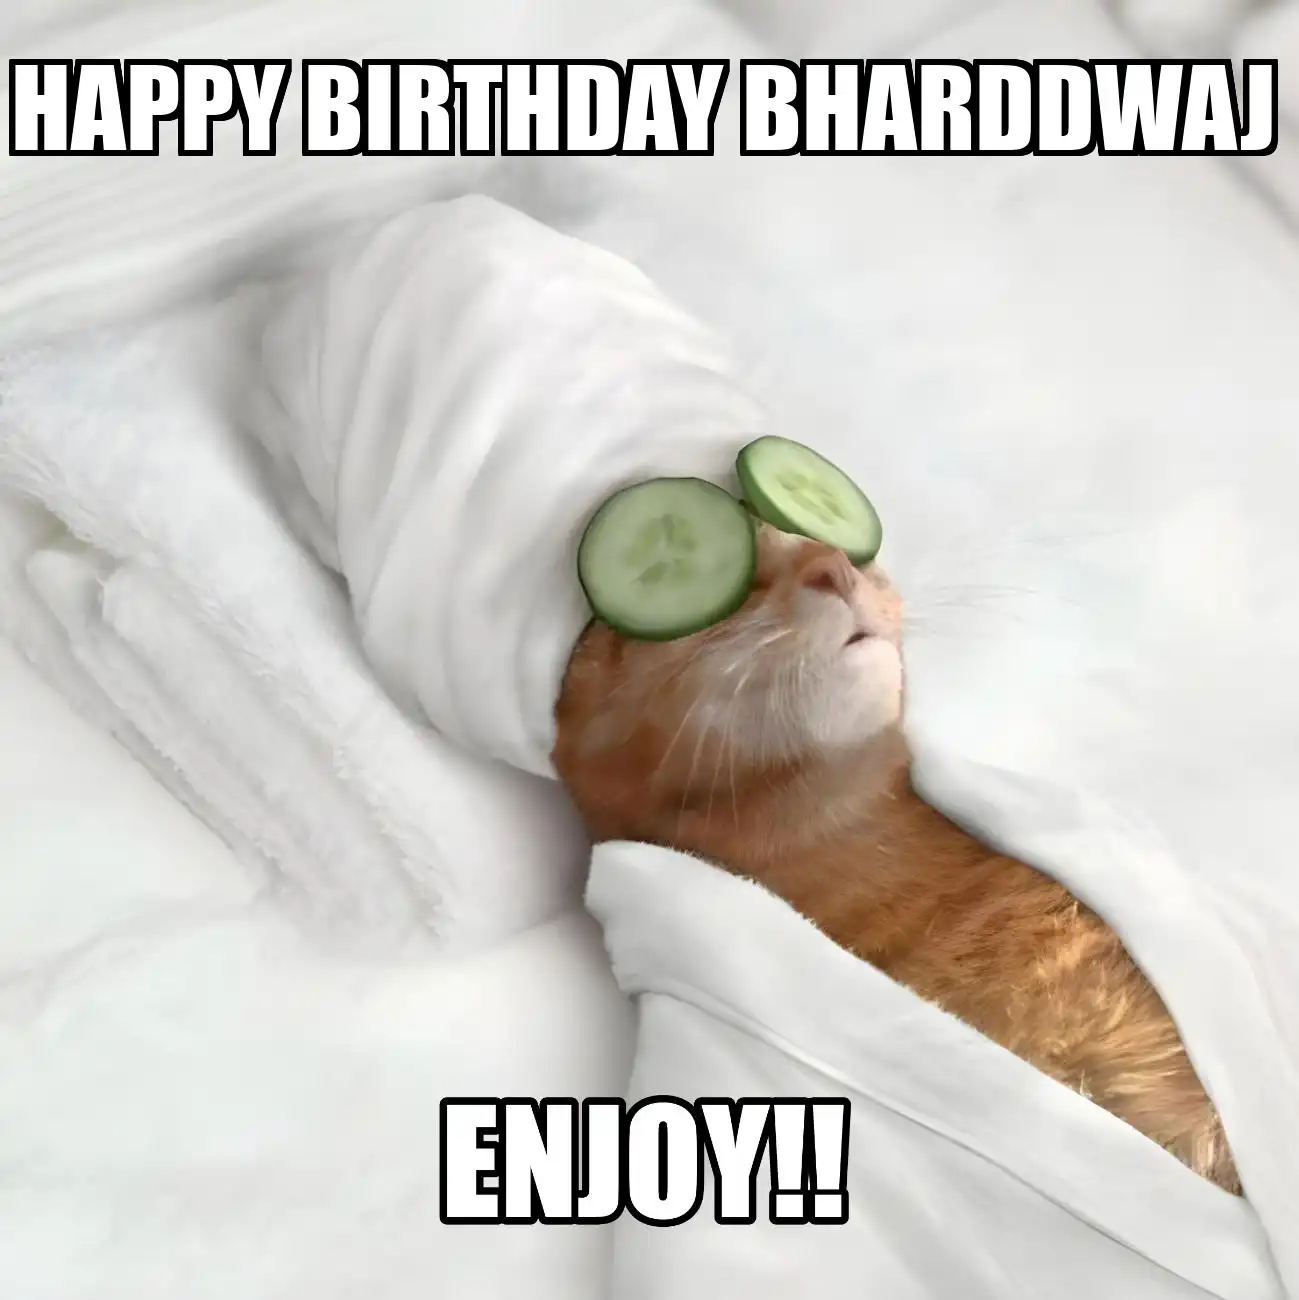 Happy Birthday Bharddwaj Enjoy Cat Meme